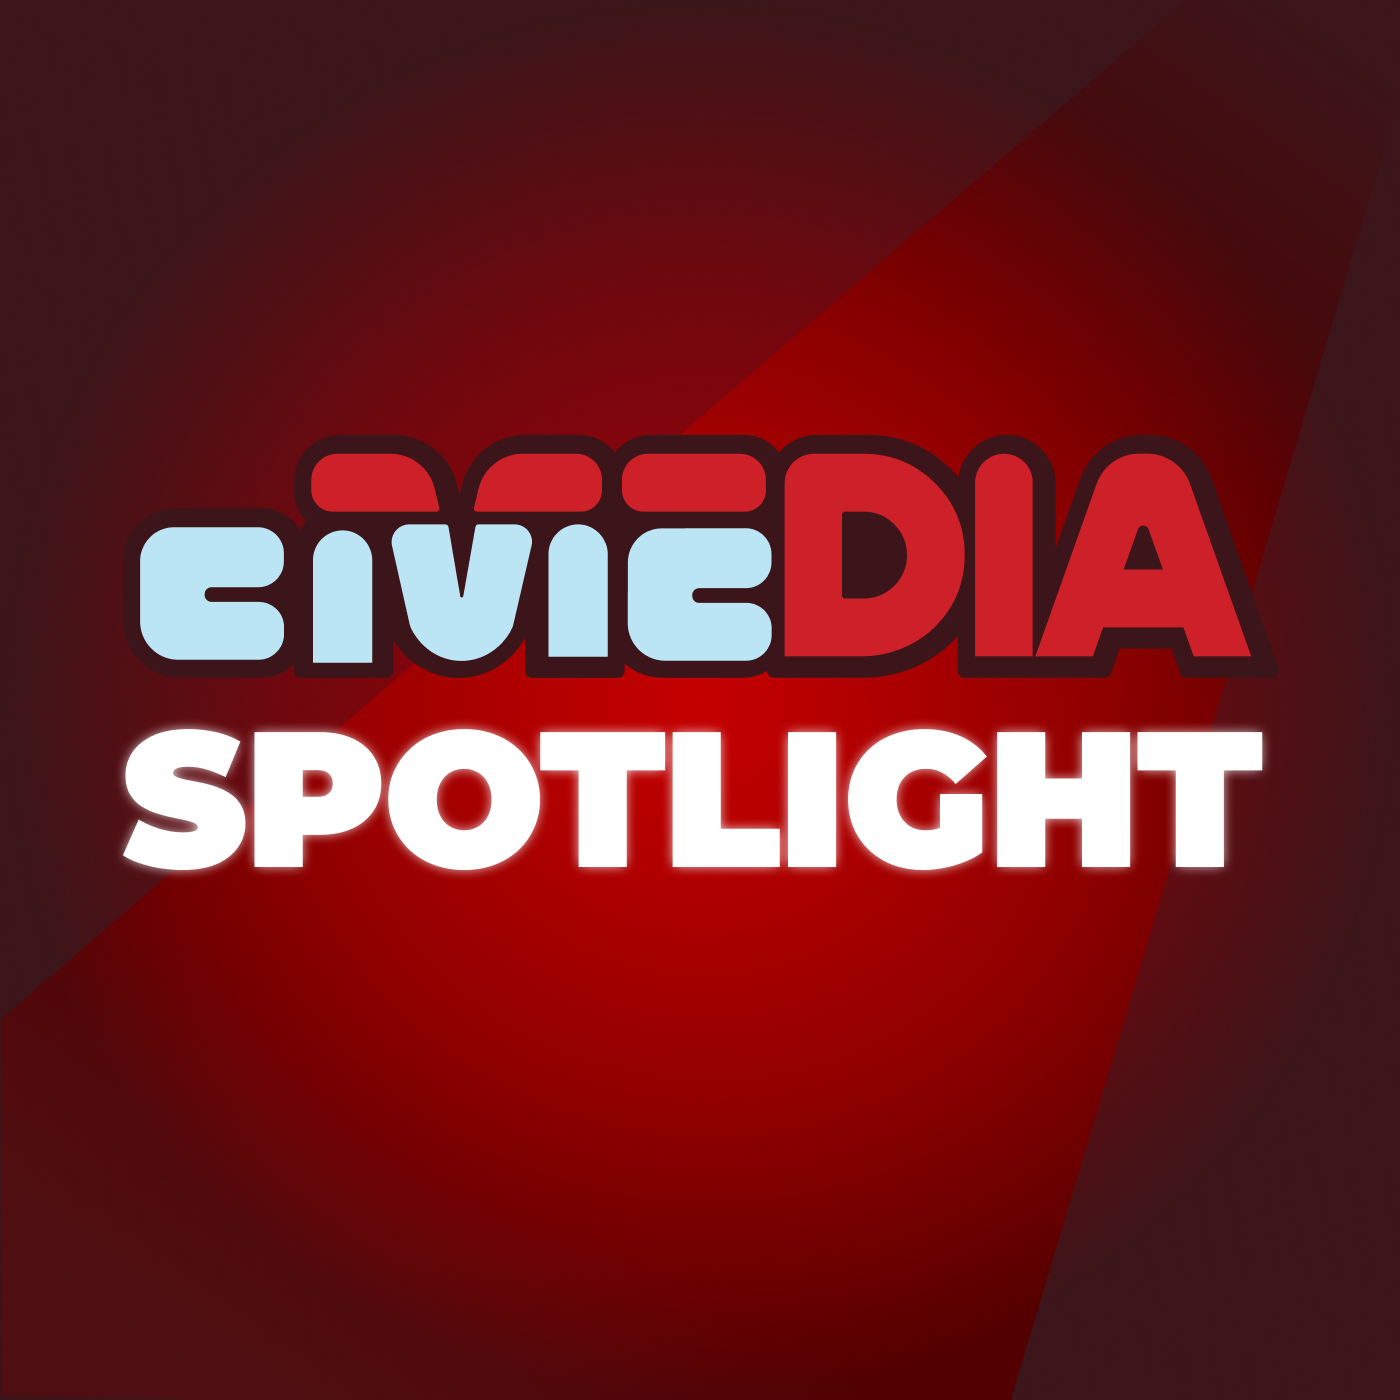 Civic Media Spotlight logo